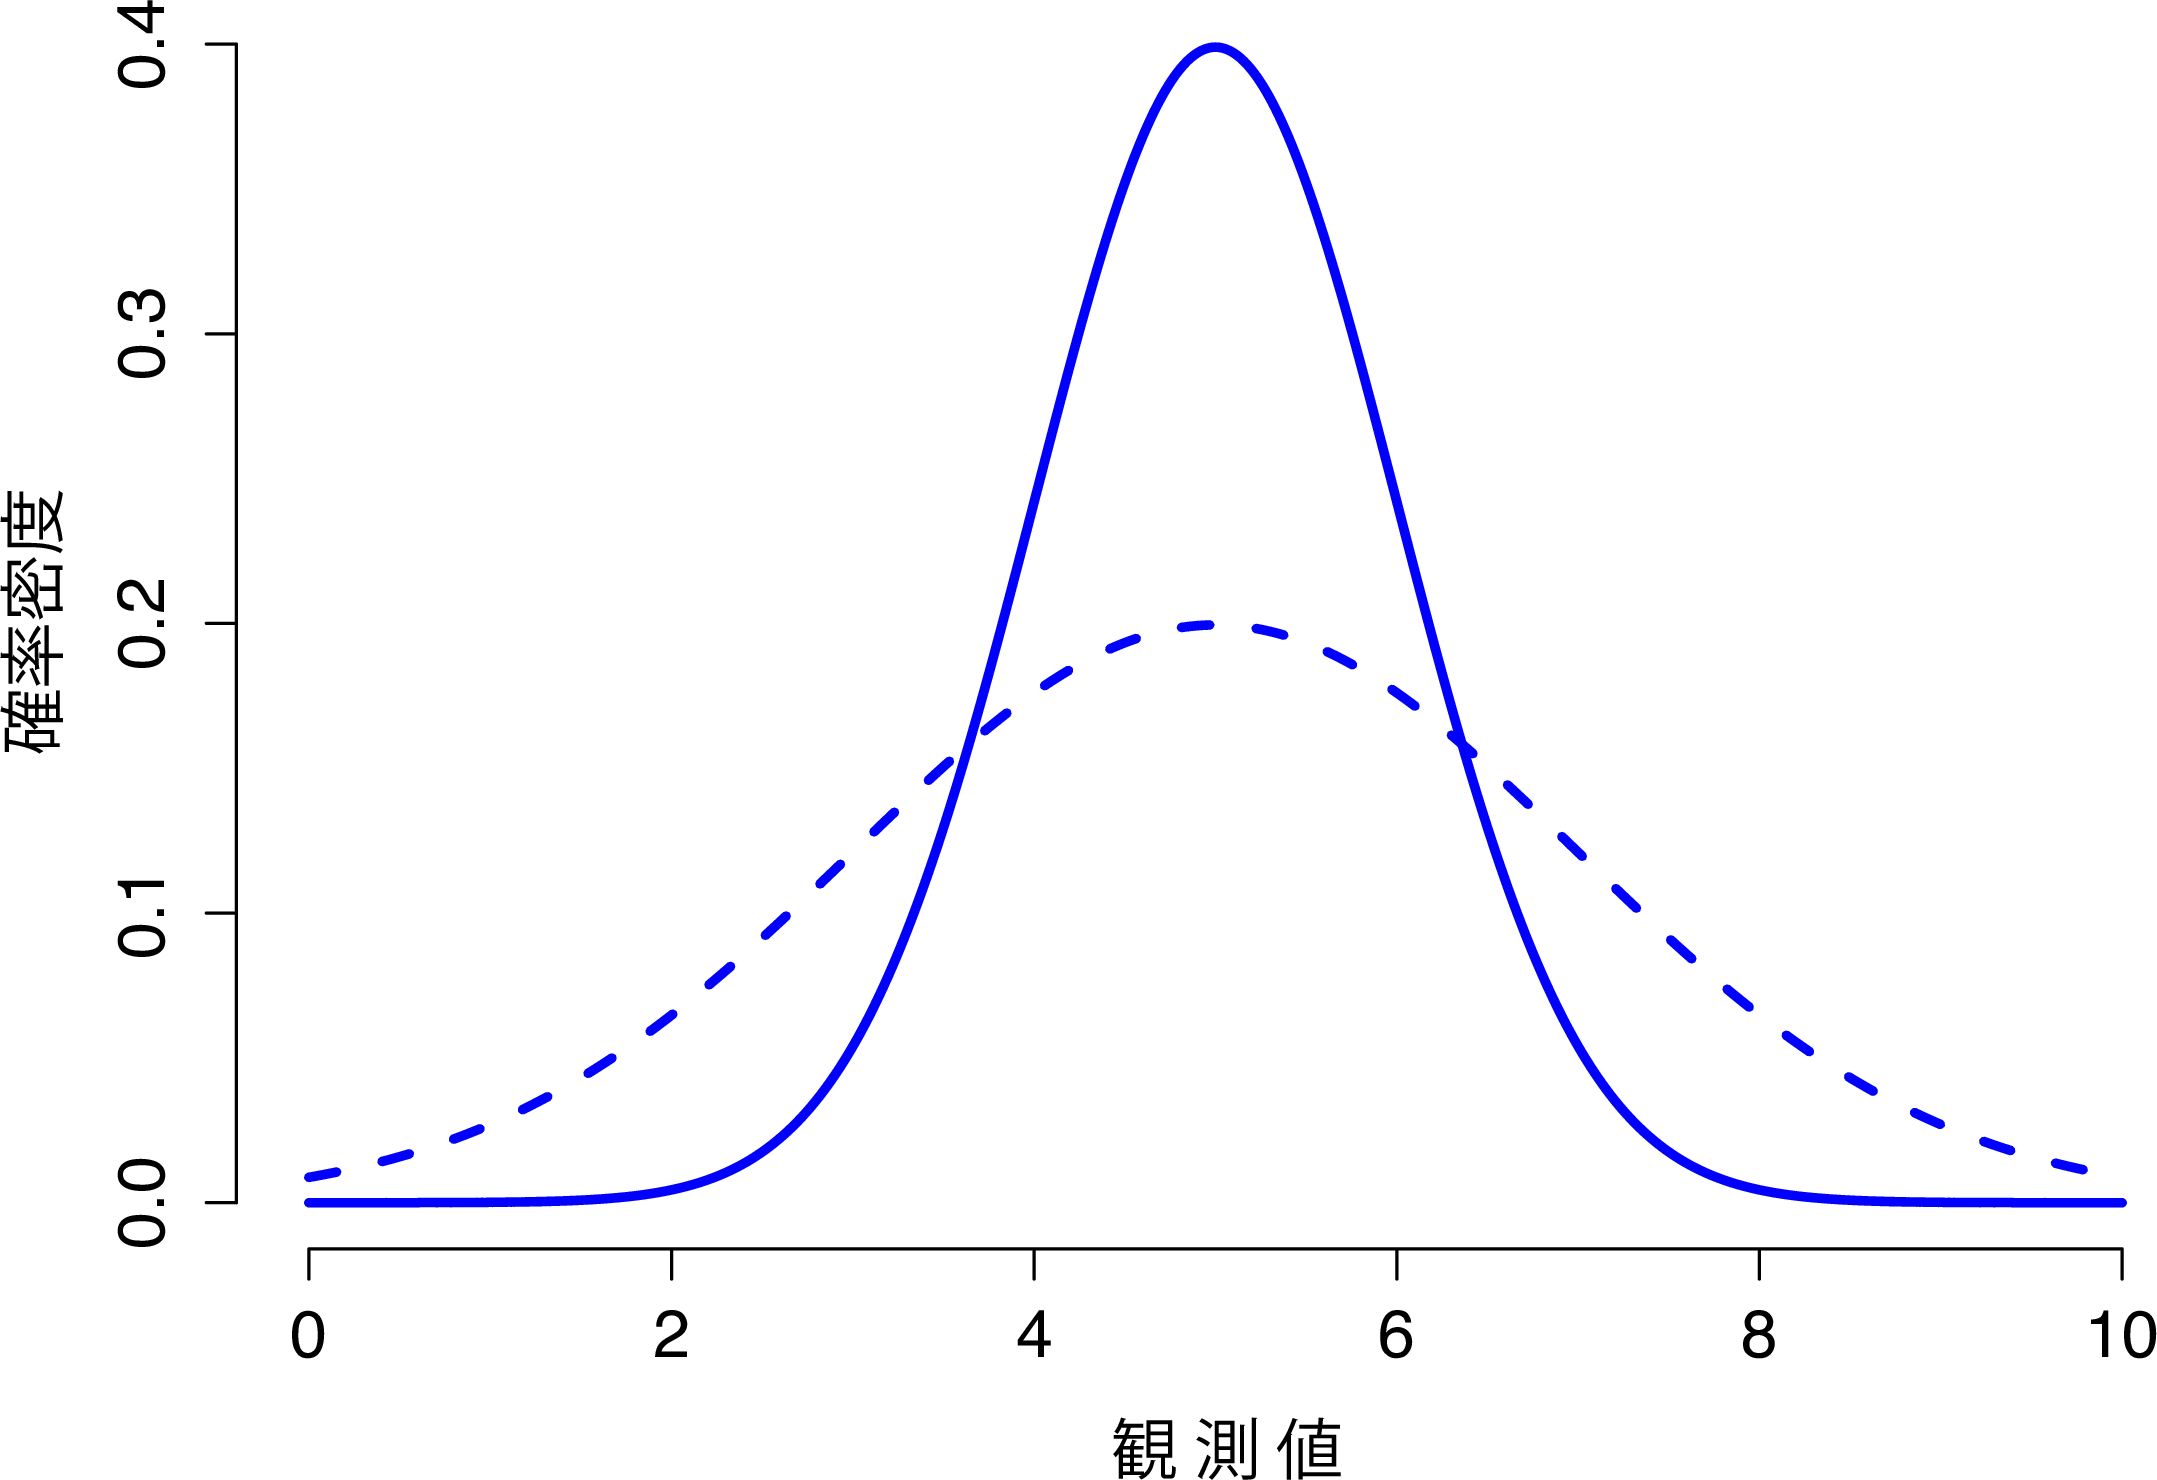 正規分布の標準偏差を変化させたときの様子。 この図に示されている2つの分布は，どちらも平均値は\(\mu=5\)で，標準偏差が異なる。実線は標準偏差\(\sigma=1\)の分布で，破線は標準偏差\(\sigma=2\)の分布。両方の分布は同じ場所に「中心」があるが，破線の曲線は実線のものよりも広がっている。